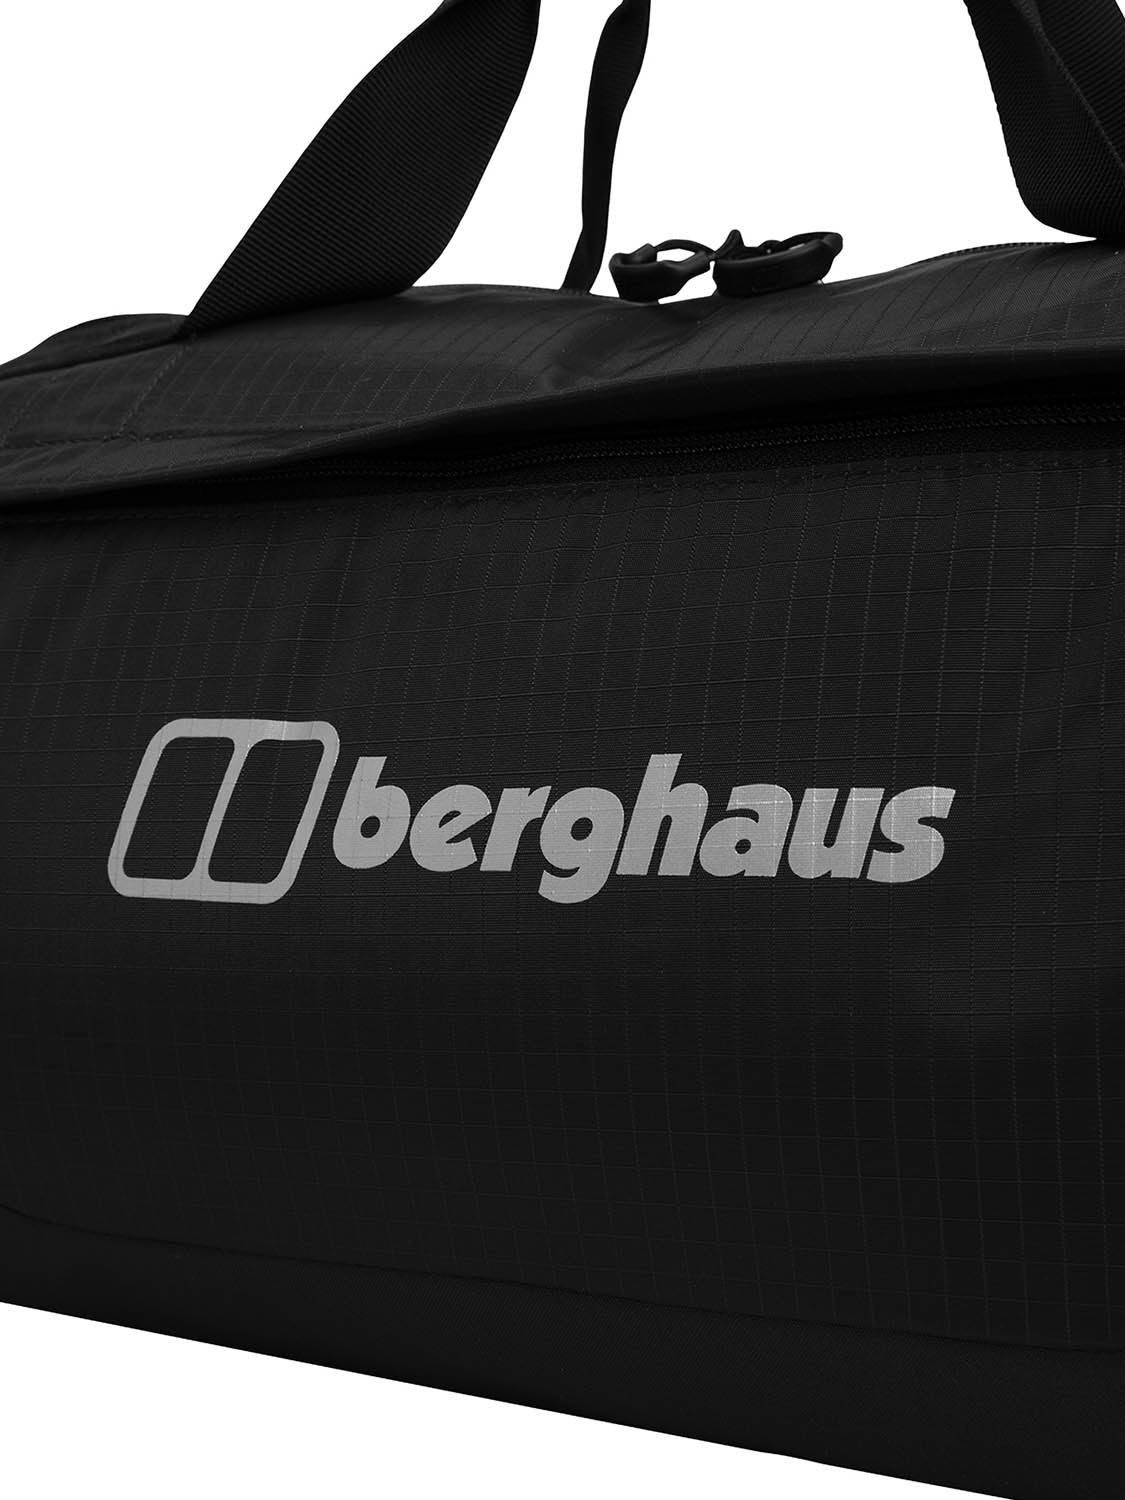 Berghaus Carryall Mule 30 Duffle - Black